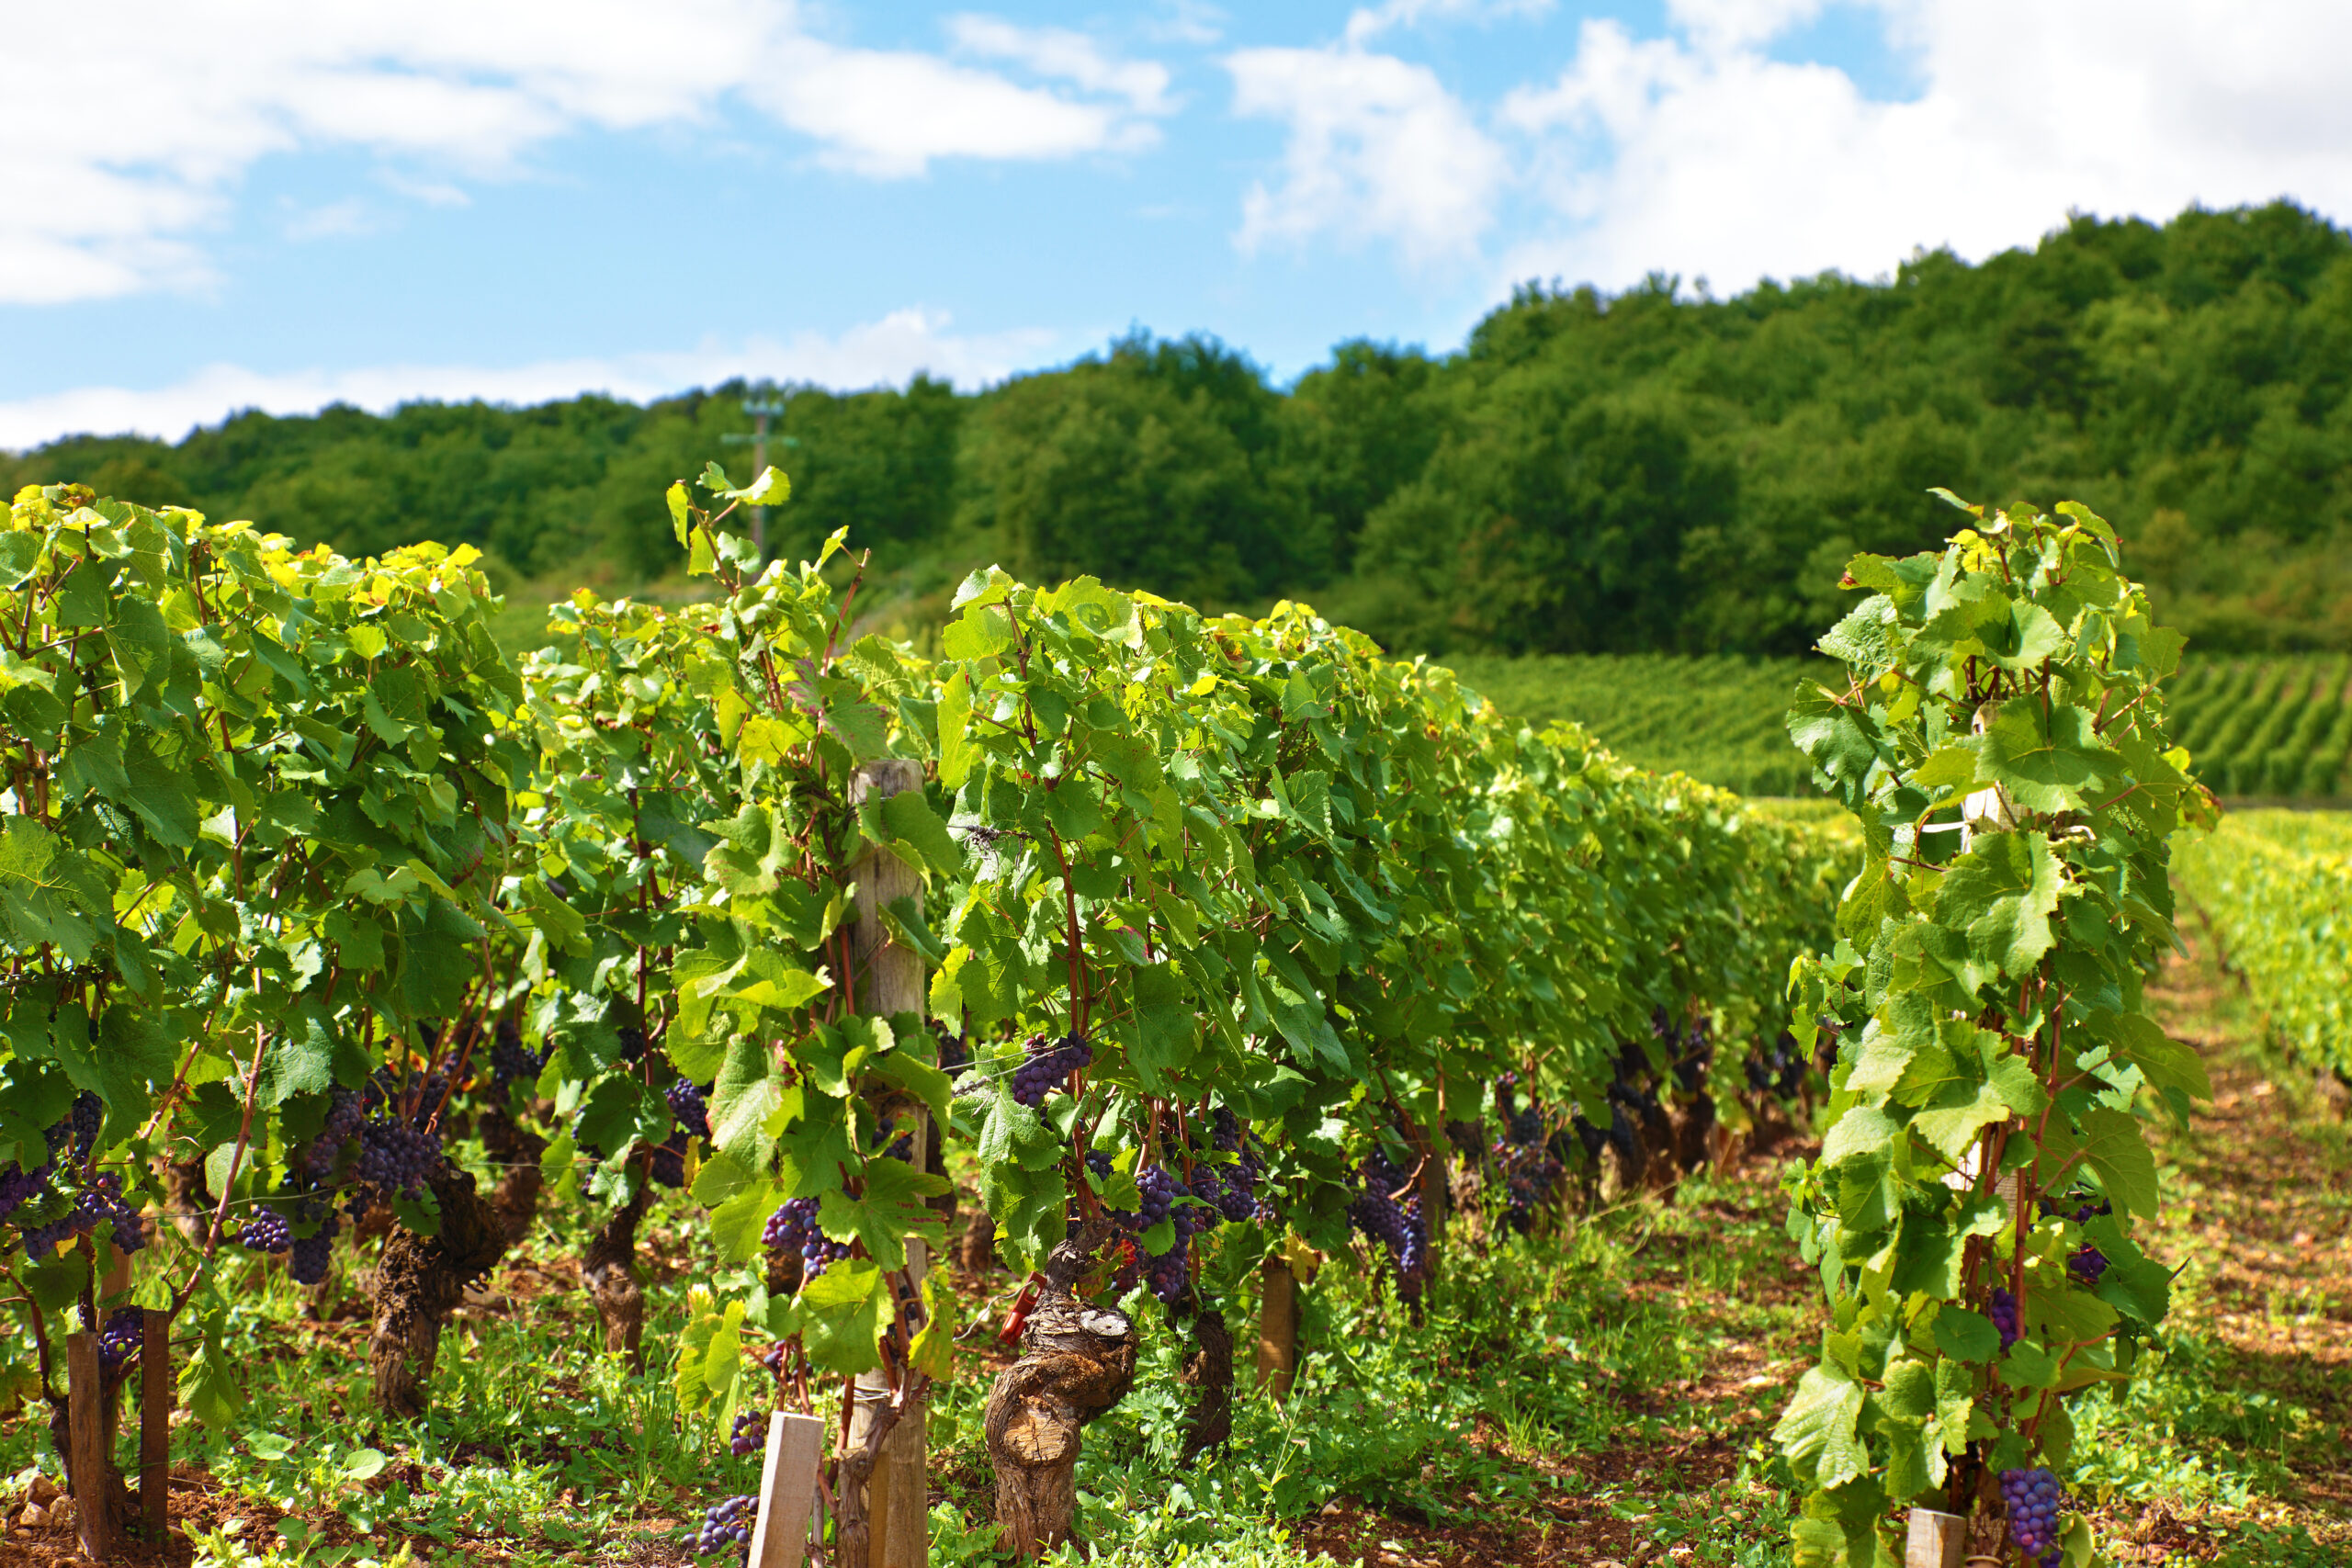  Saisonnier en viticulture / arboriculture